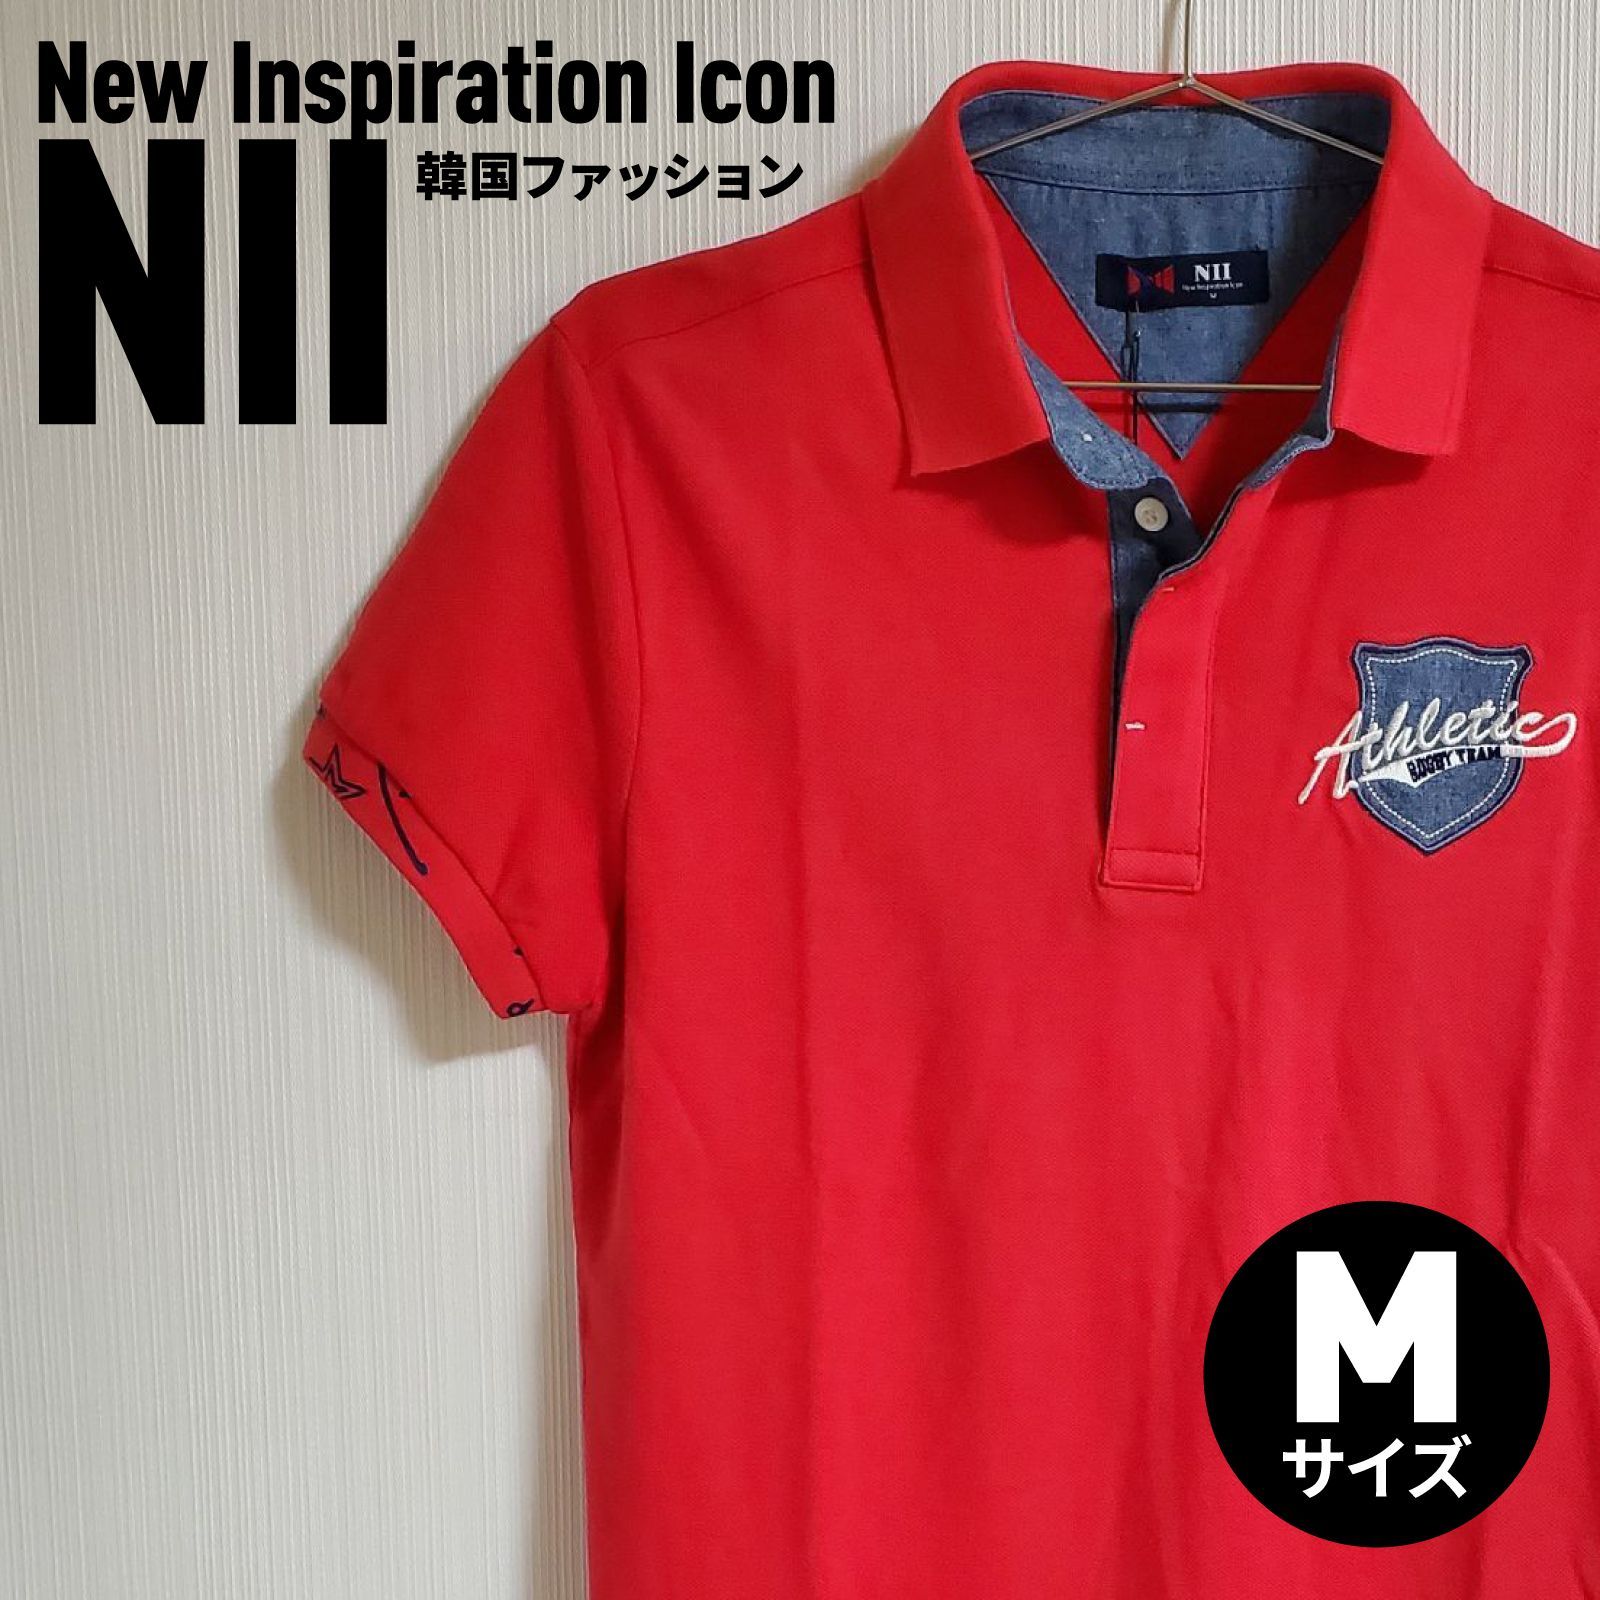 【新品】NII New Inspiration Icon レッド 赤 ポロシャツ 韓国ファッション メンズ 男性 紳士 Mサイズ